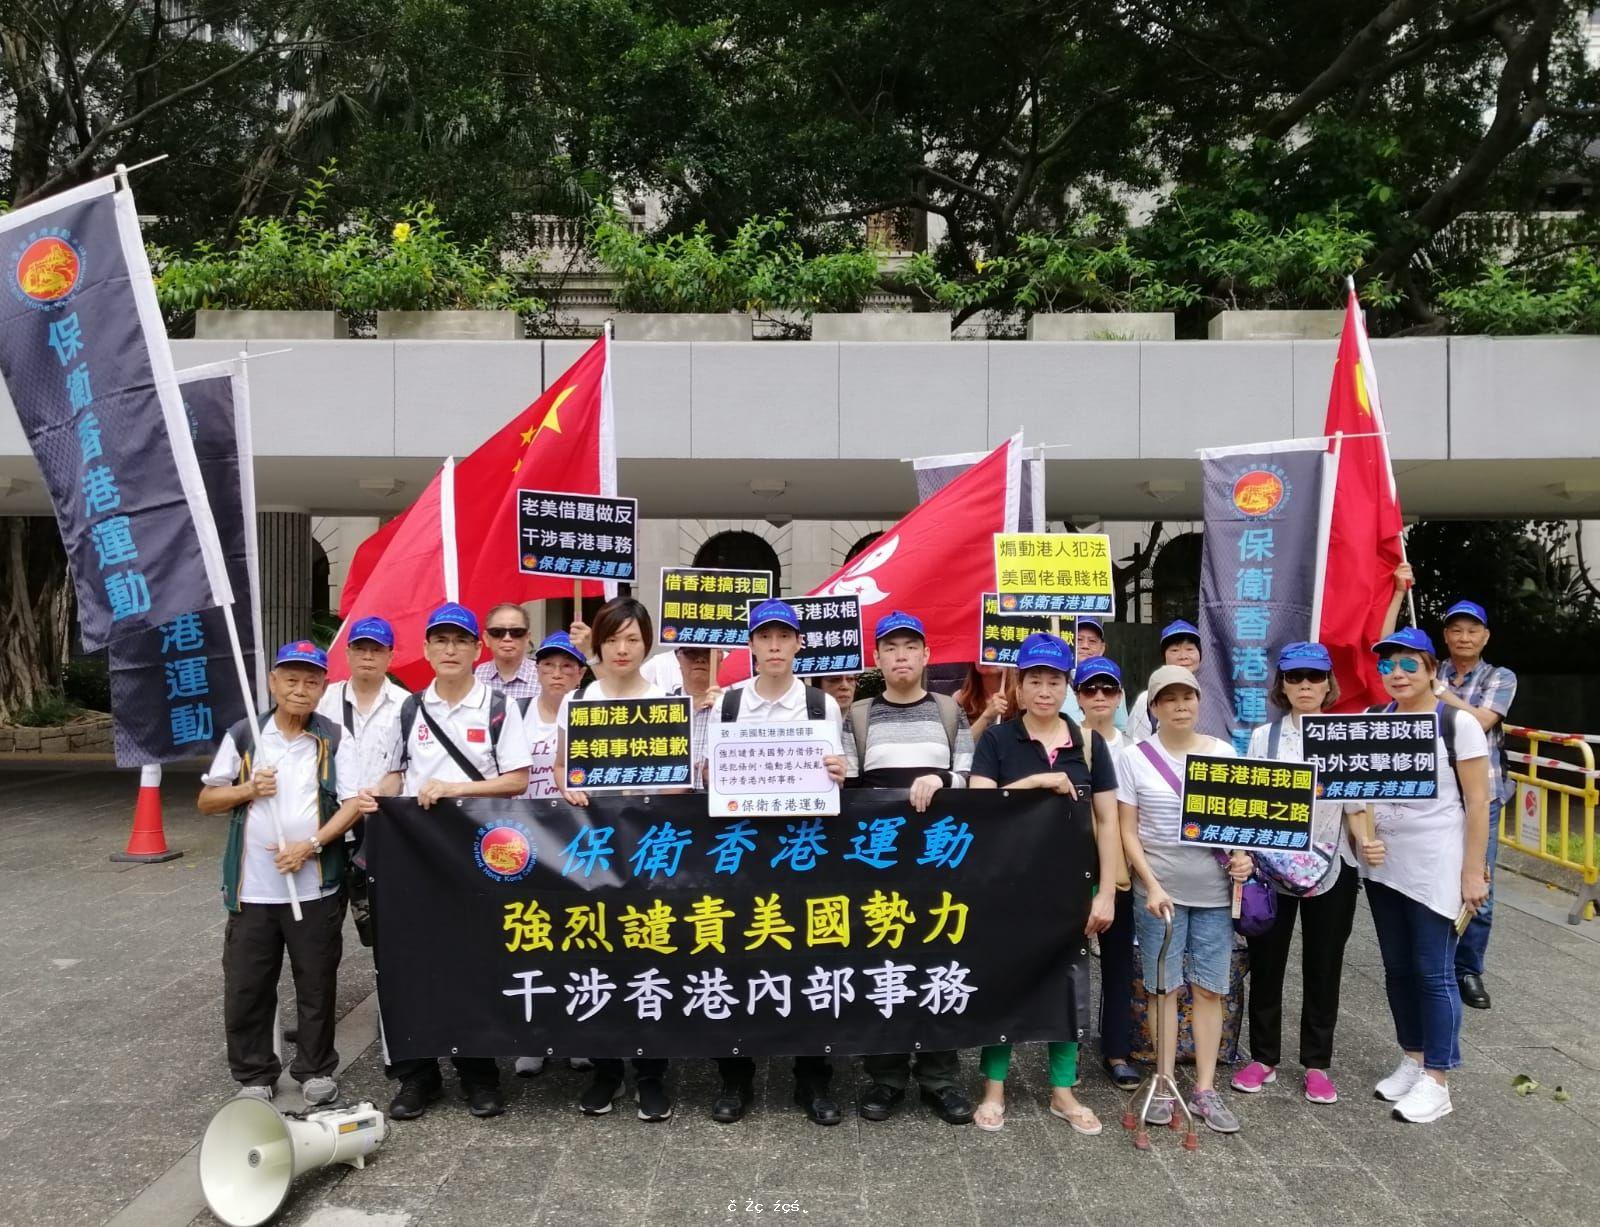 保衛香港運動 主辦「強烈譴責美國勢力干涉香港內部事務」遊行集會